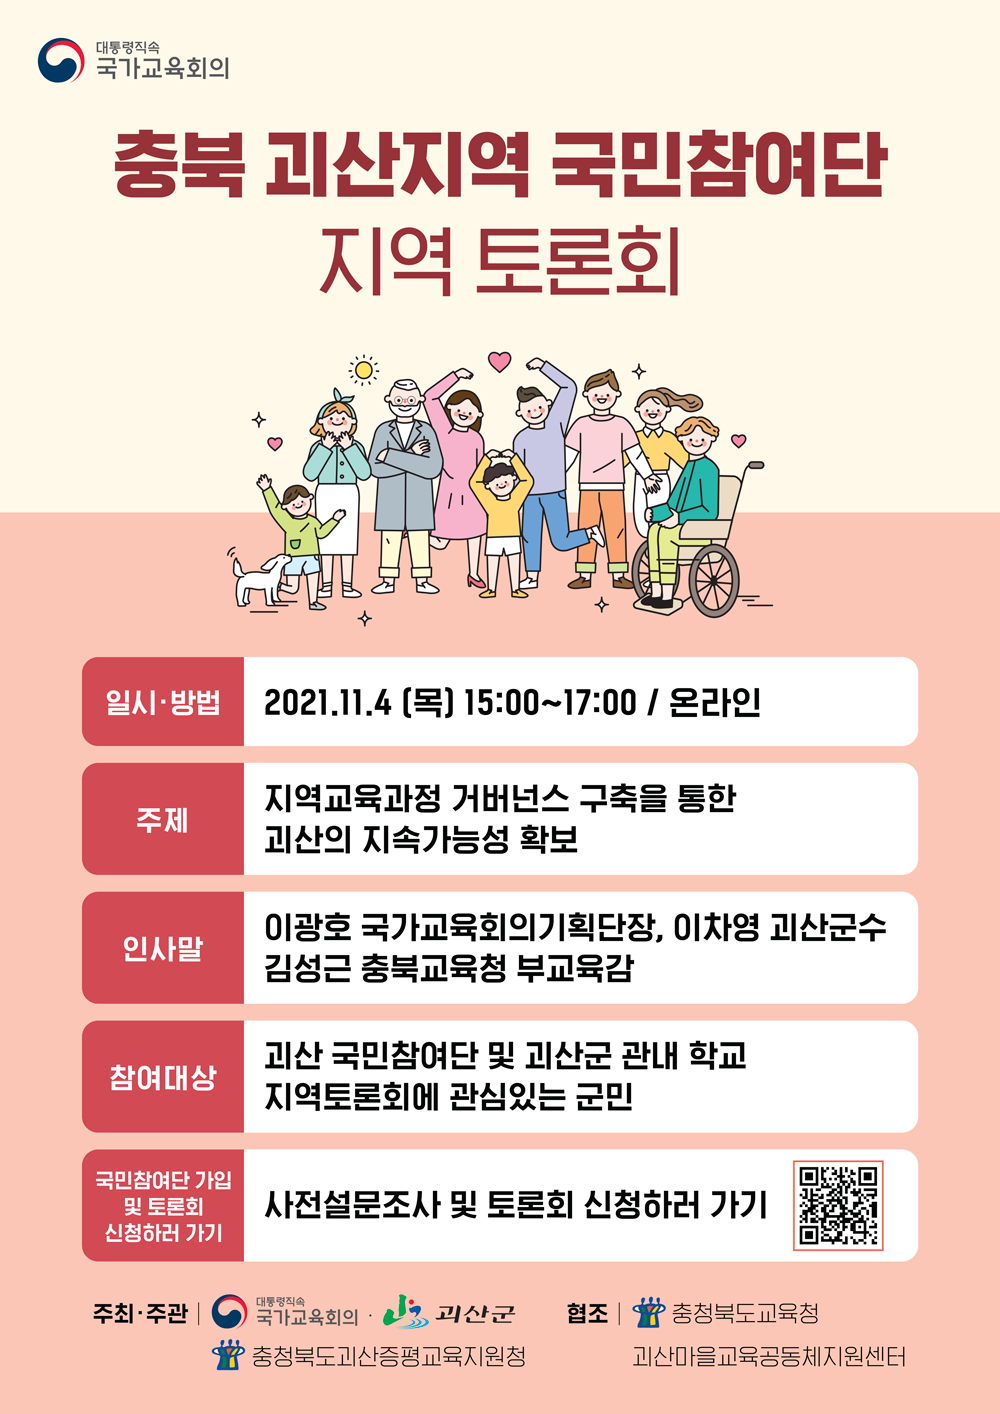 충청북도괴산증평교육지원청-교육과_충북괴산토론회-웹자보